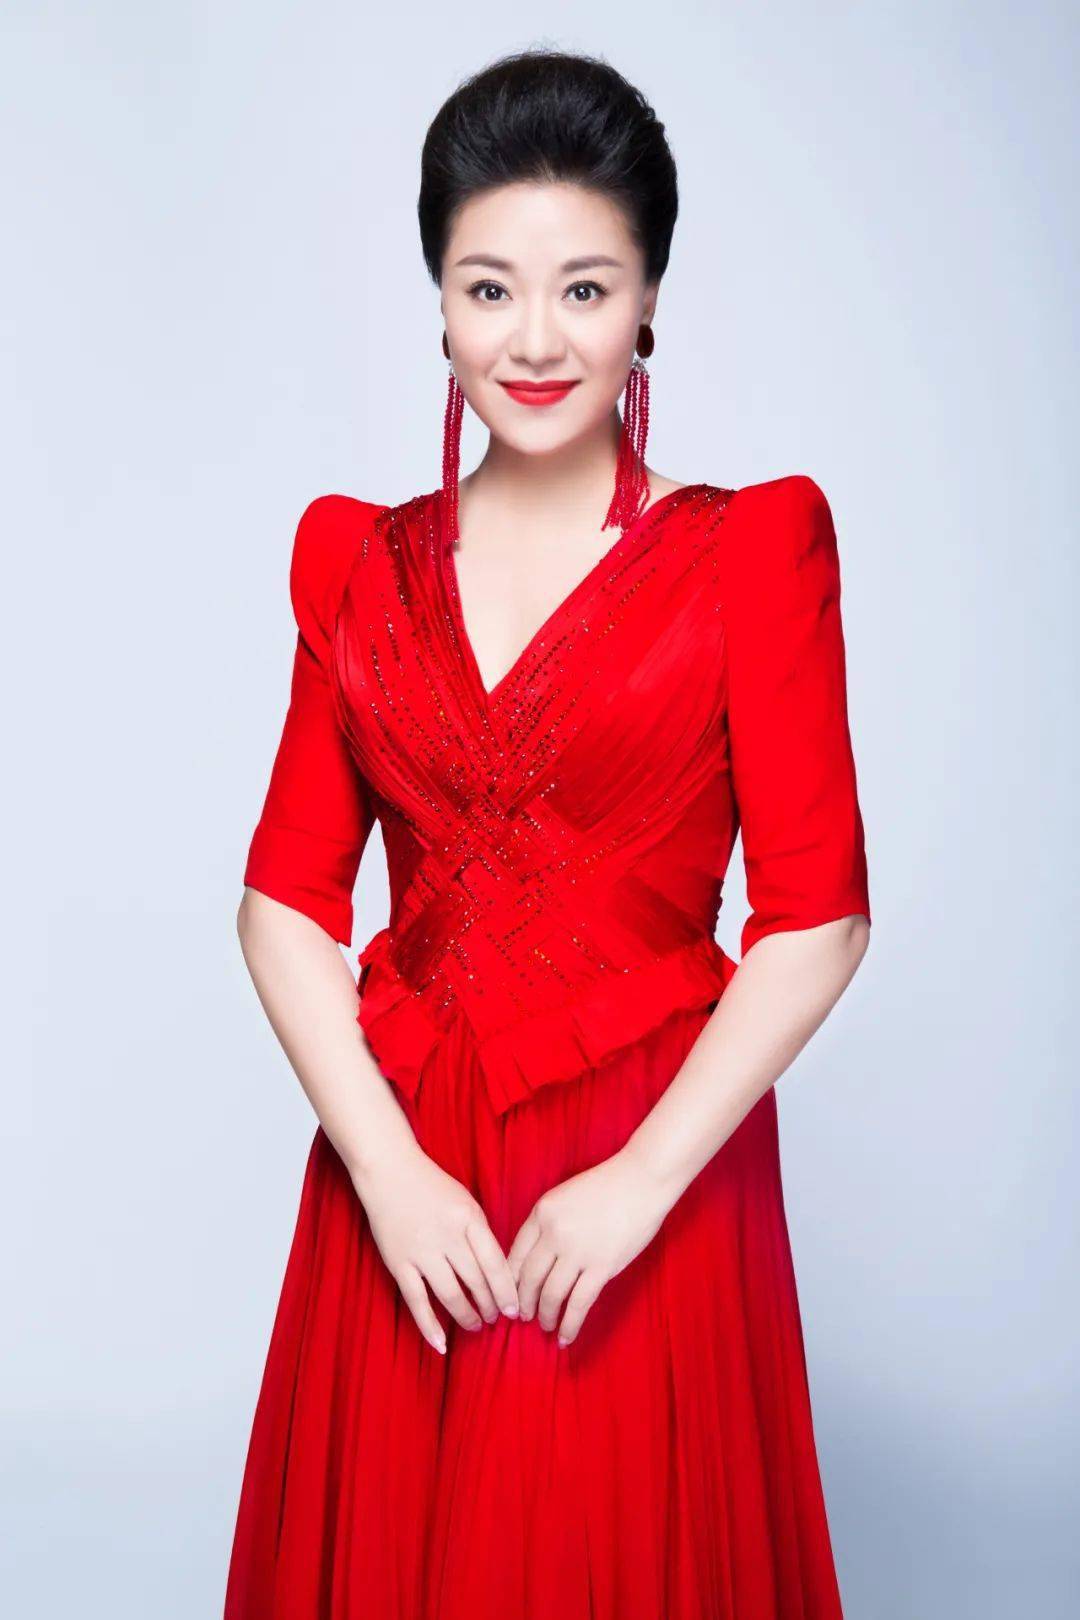 长沙跨年音乐会|湘籍著名女高音歌唱家王丽达重磅加盟